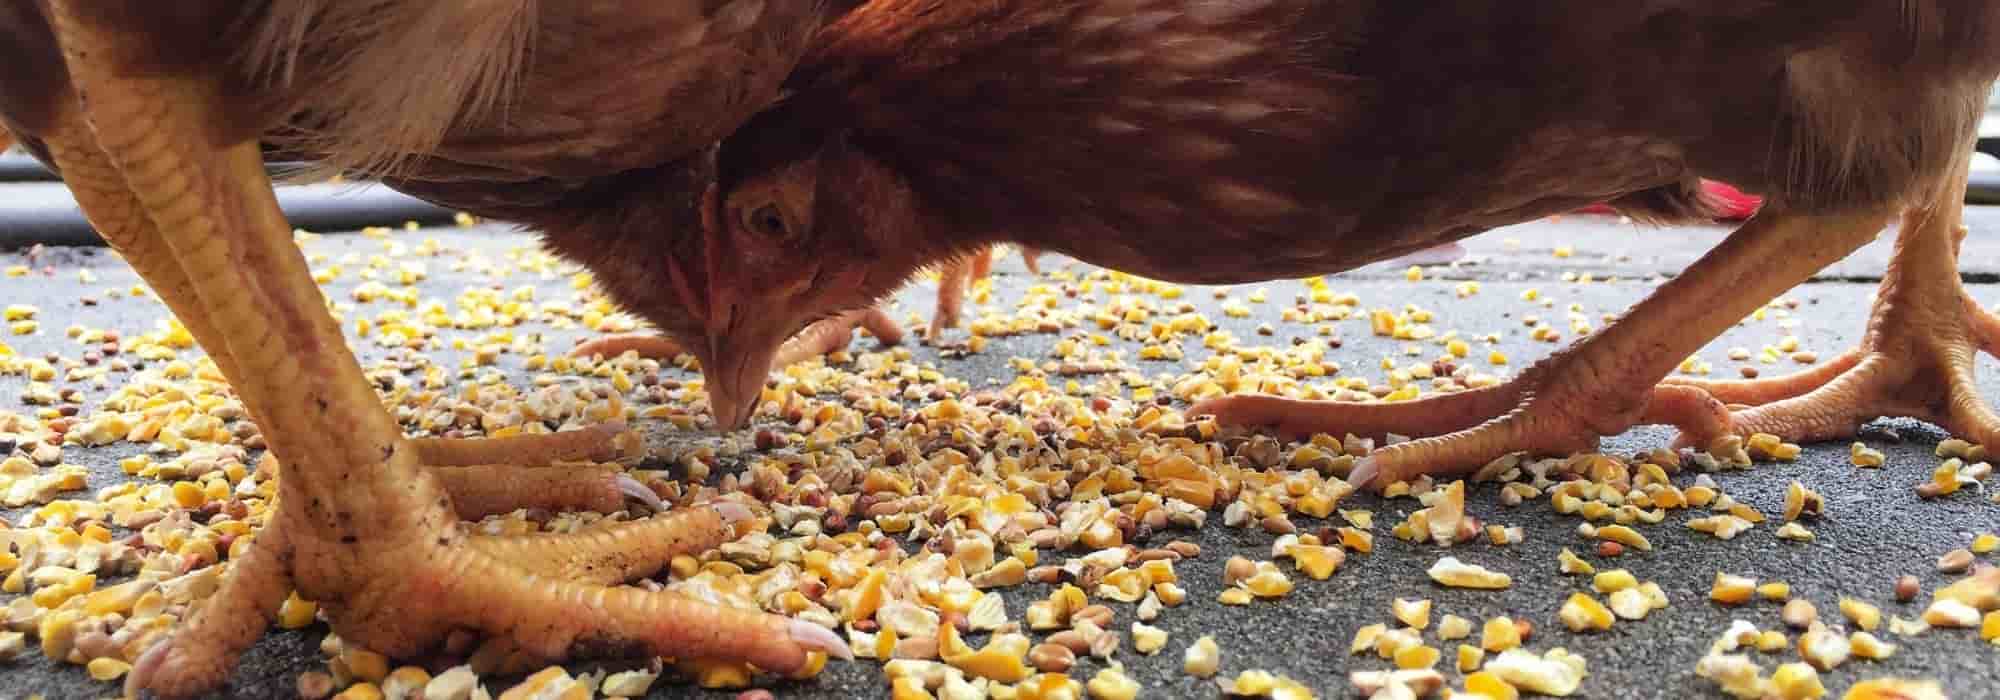 Les aliments interdits pour les poules